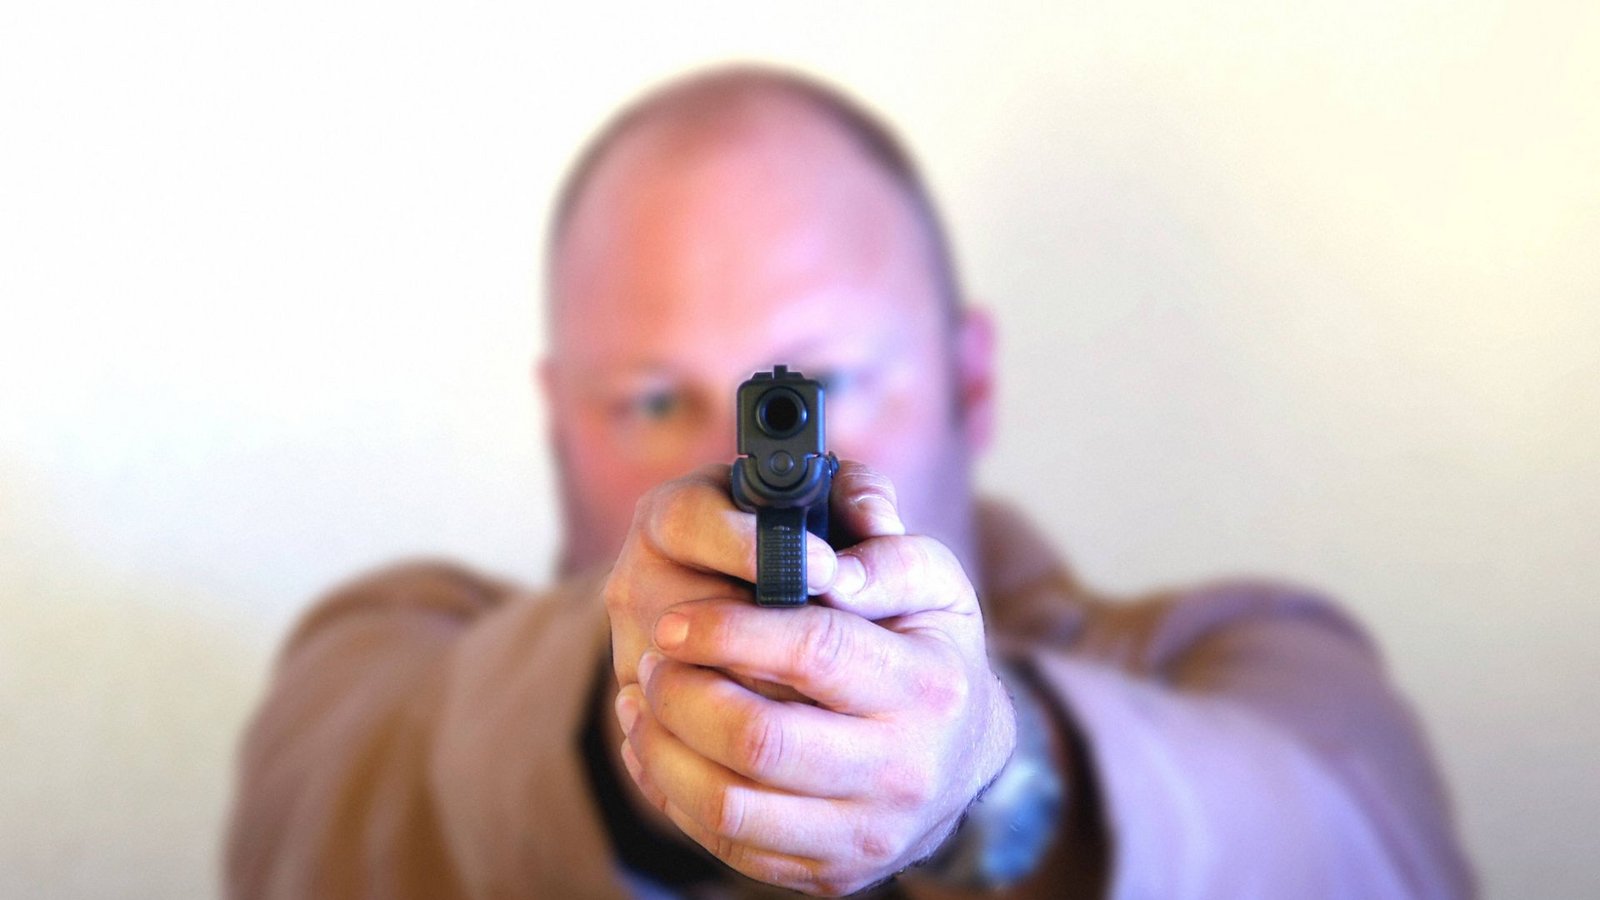 Der Mann bedrohte die Familie mit einer Waffe. (Symbolbild)Foto: imago/blickwinkel/imago stock&people